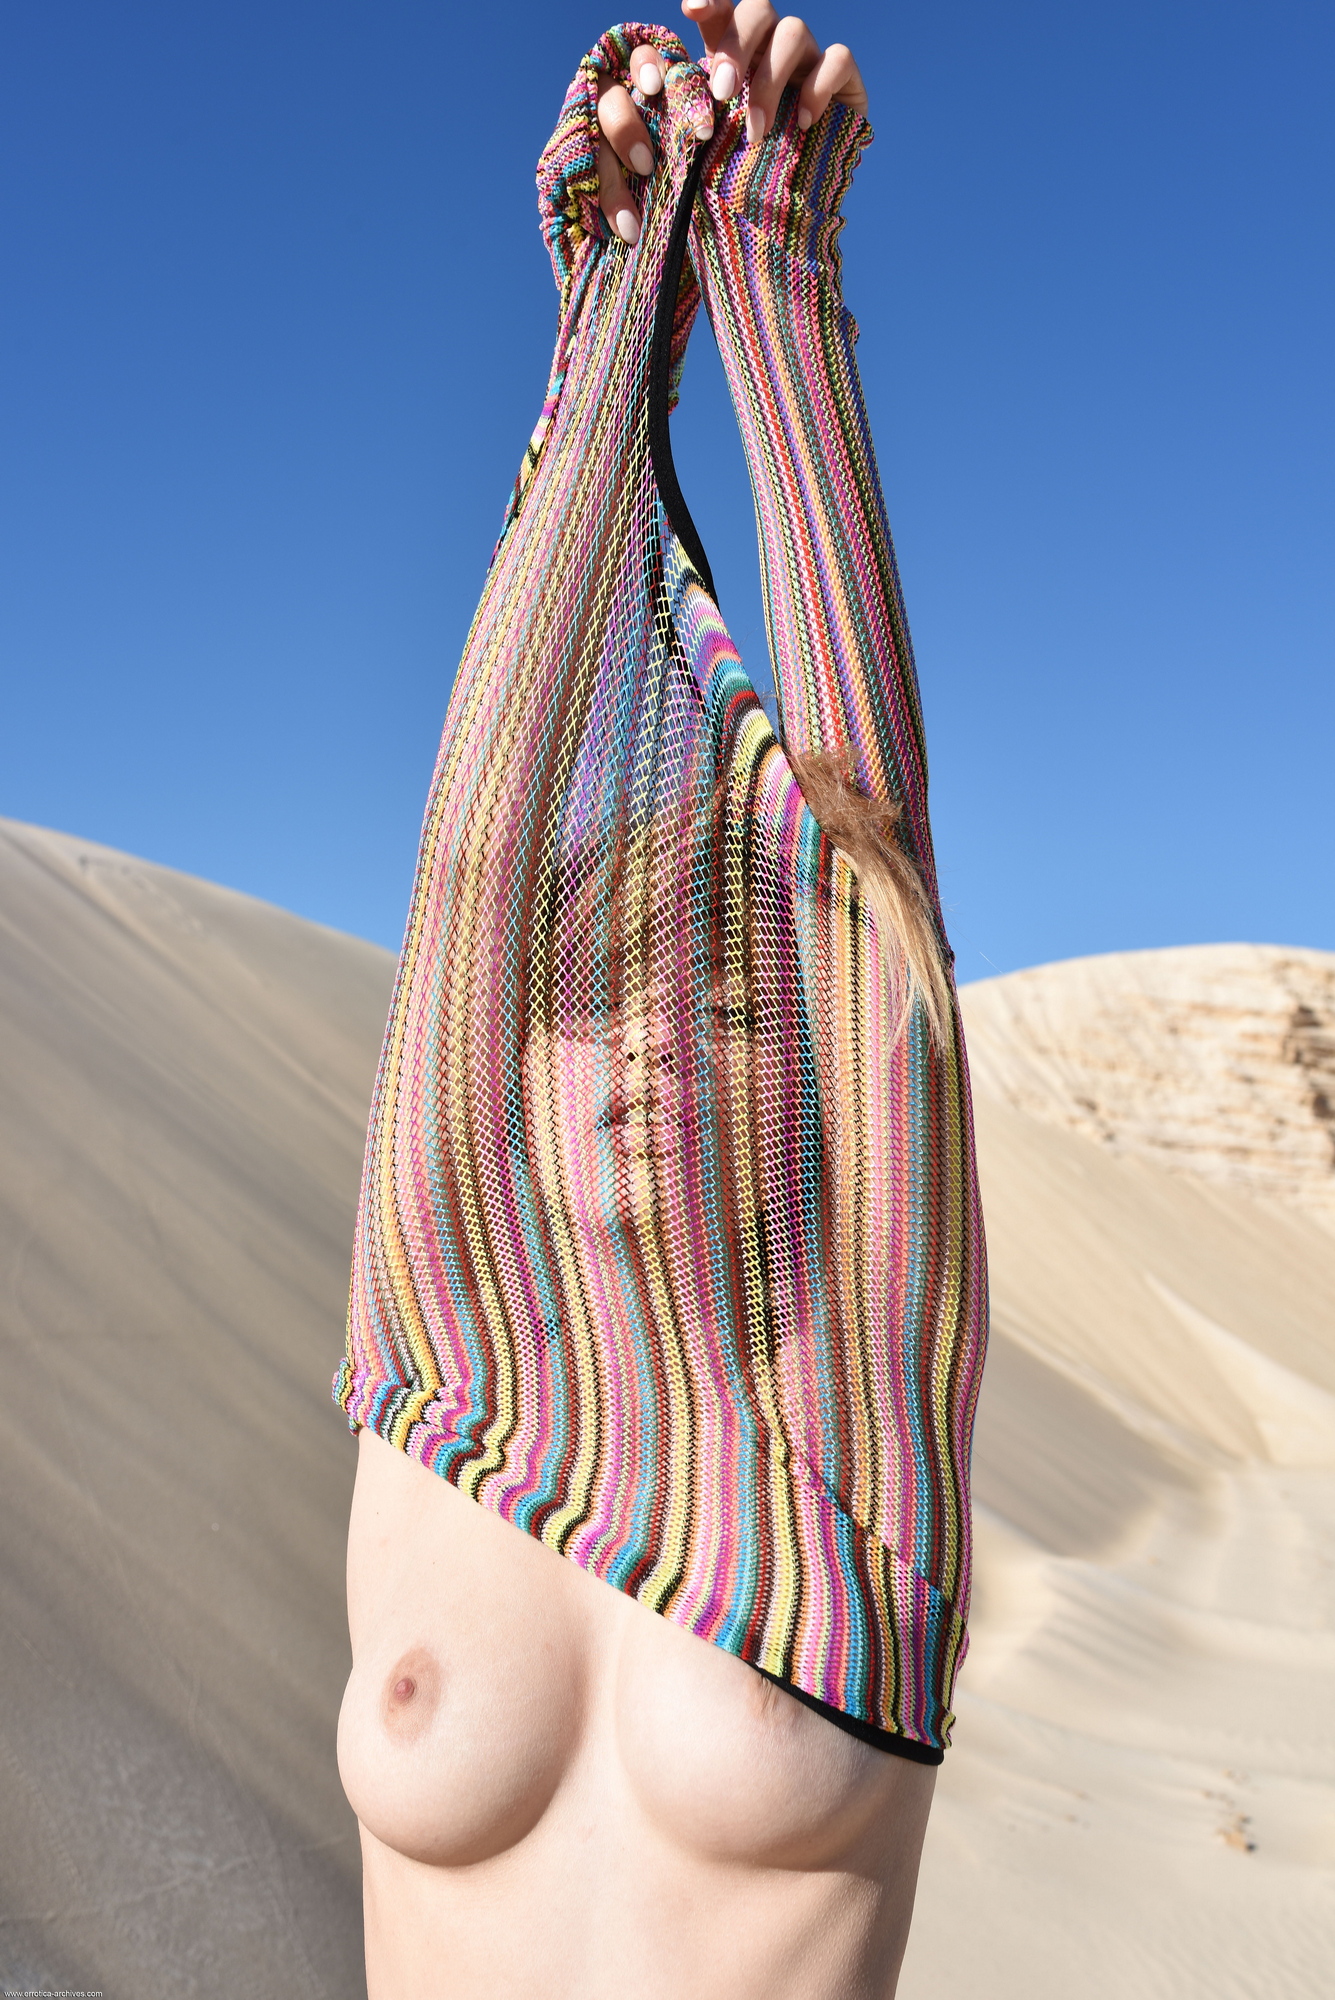 maxa-girl-naked-tits-desert-sand-dunes-errotica-archive-05